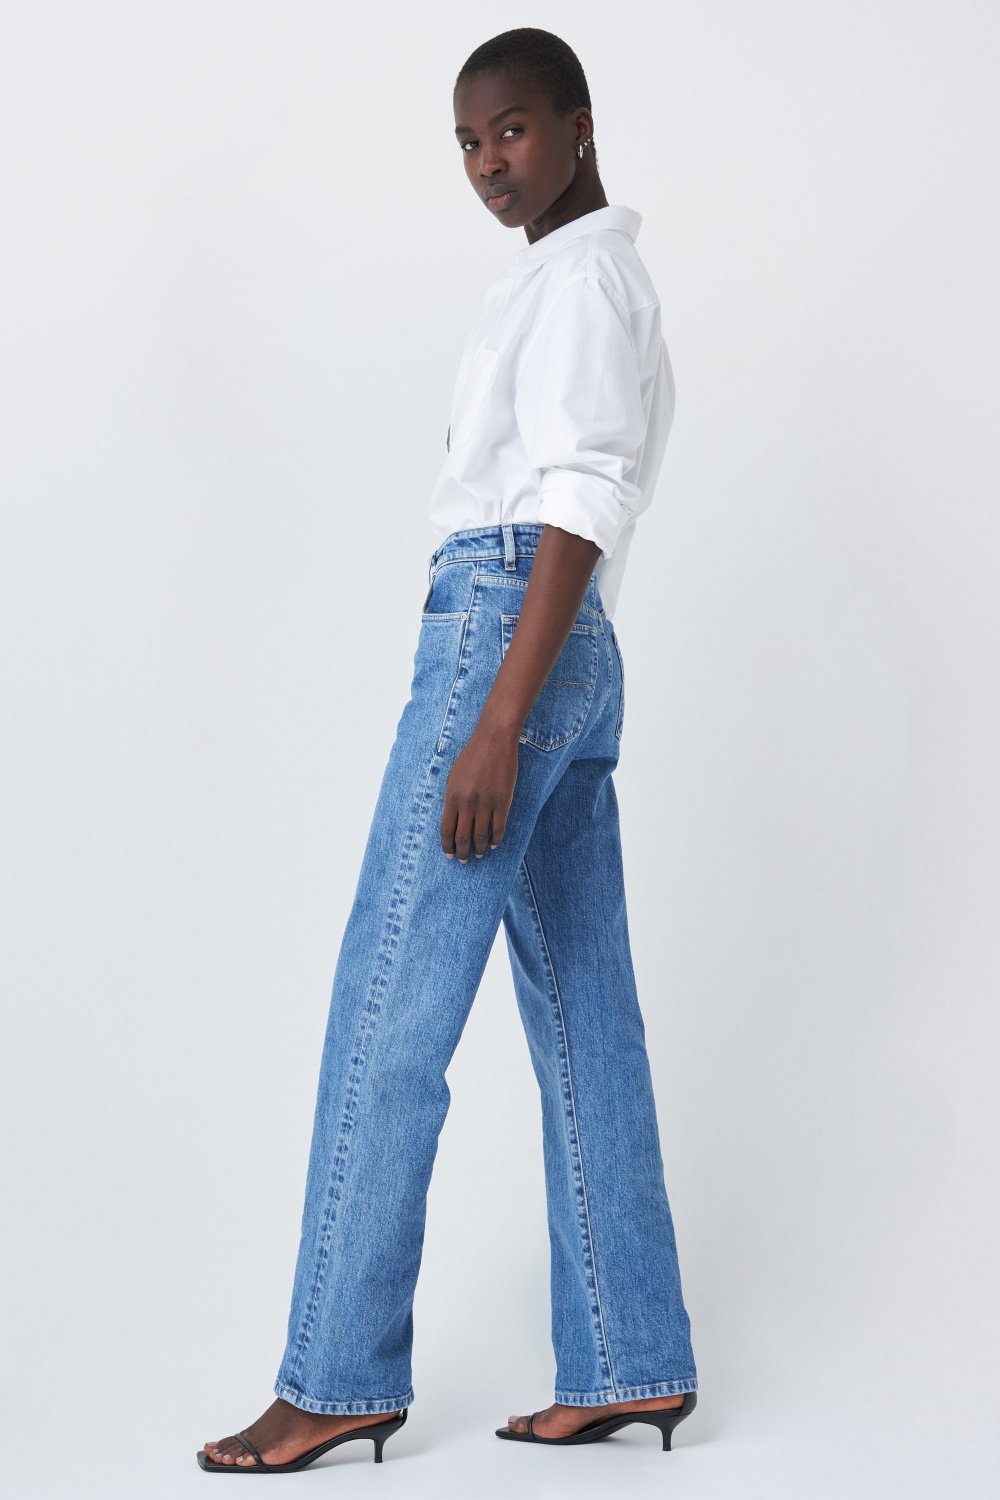 Jeans mit hoher Taille, weite Passform, mittlere Waschung - Salsa